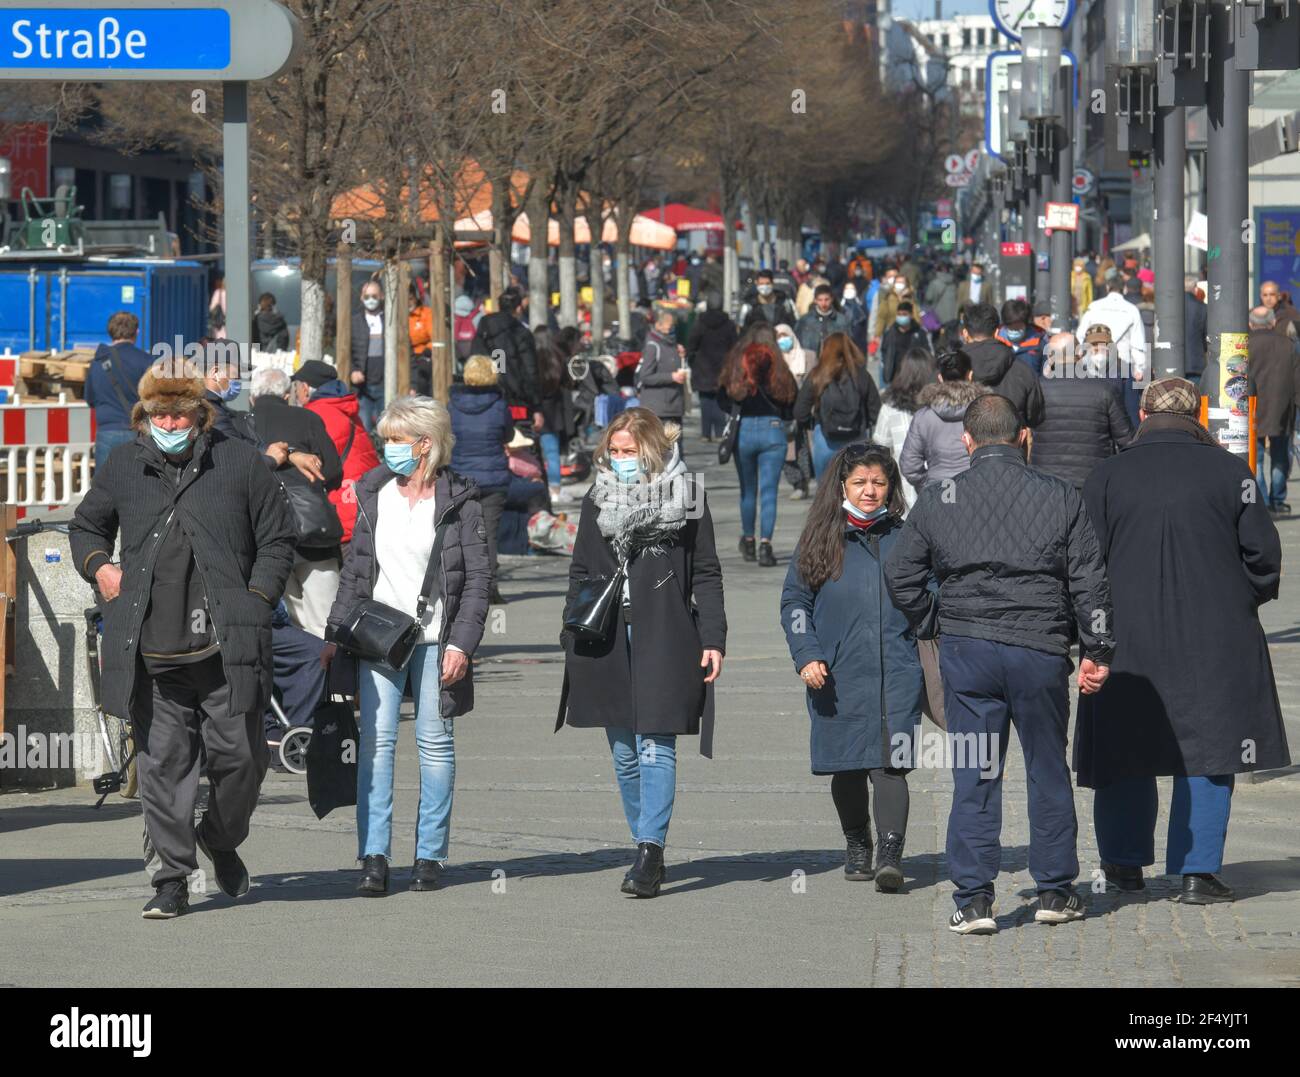 Straßenszene, Einkaufsstraße, Menschen mit Gesichtsmasken, Wilmersdorfer Straße, Charlottenburg, Berlin, Deutschland Stock Photo